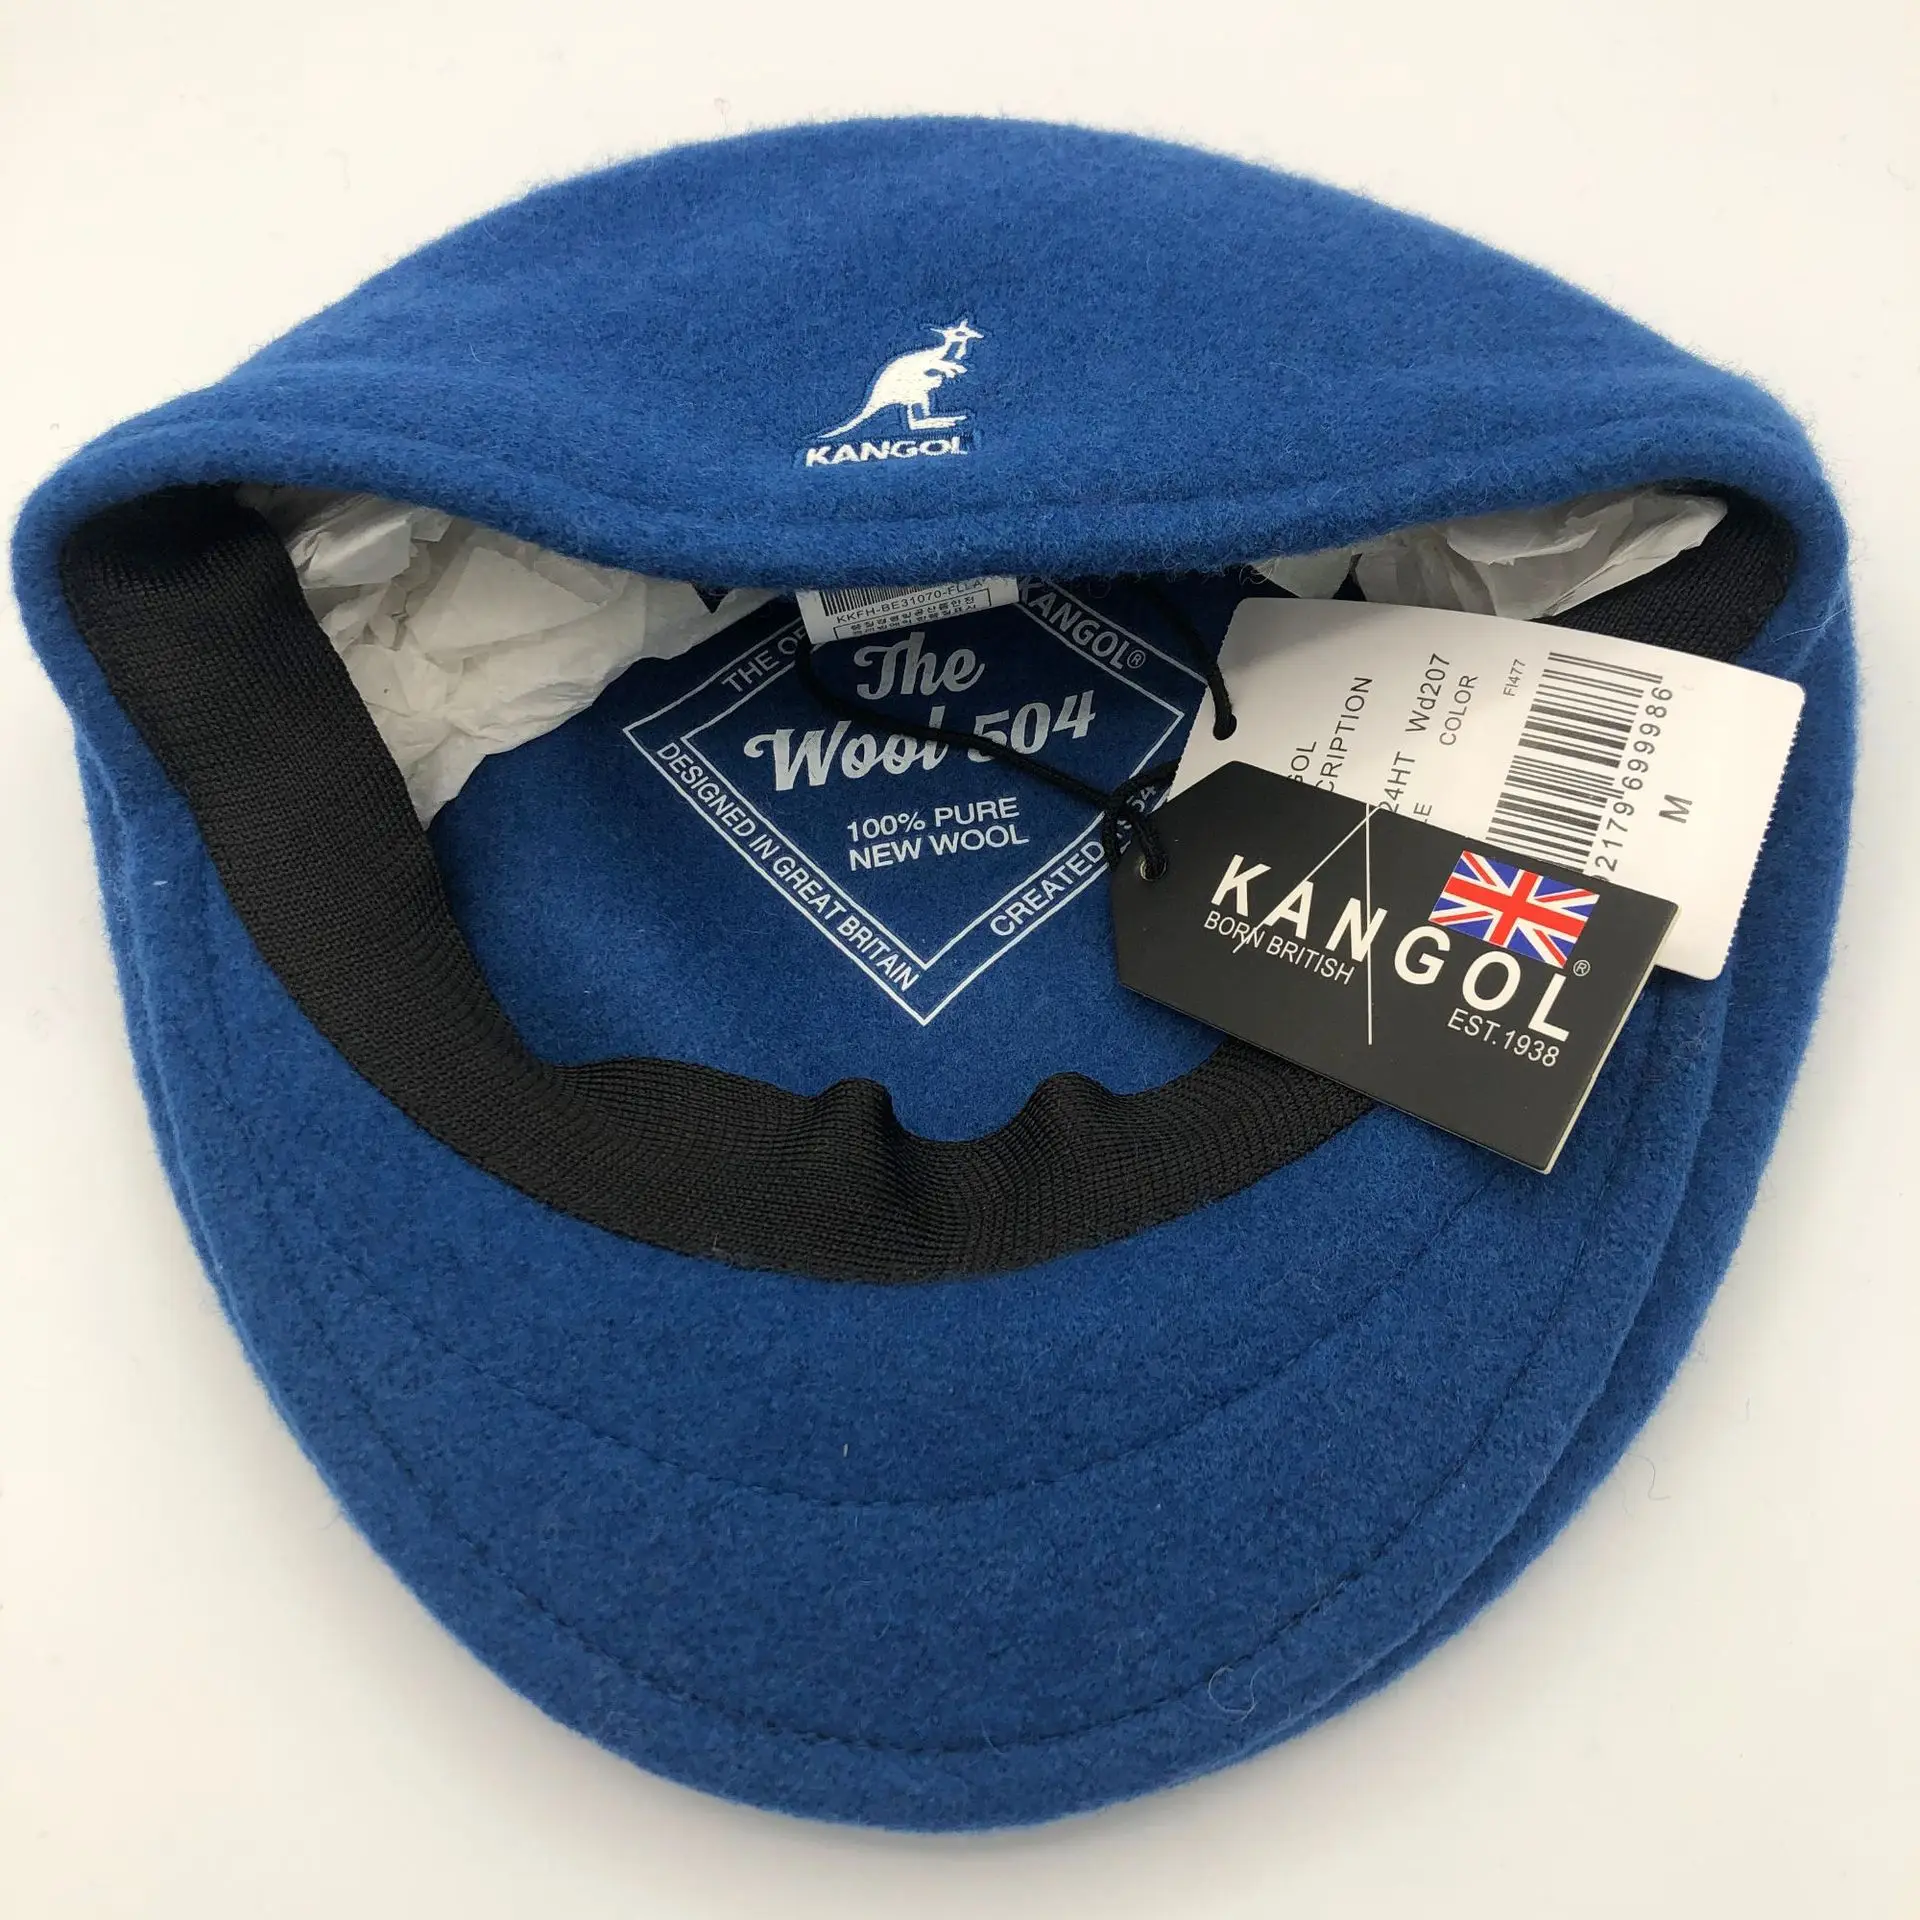 KANGOL Kangaroo Beret High Version Woolen Stencil Embroidered Wool Peaked Cap Trend All-match Japanese Super Fire Hat Unisex flat beret cap Berets